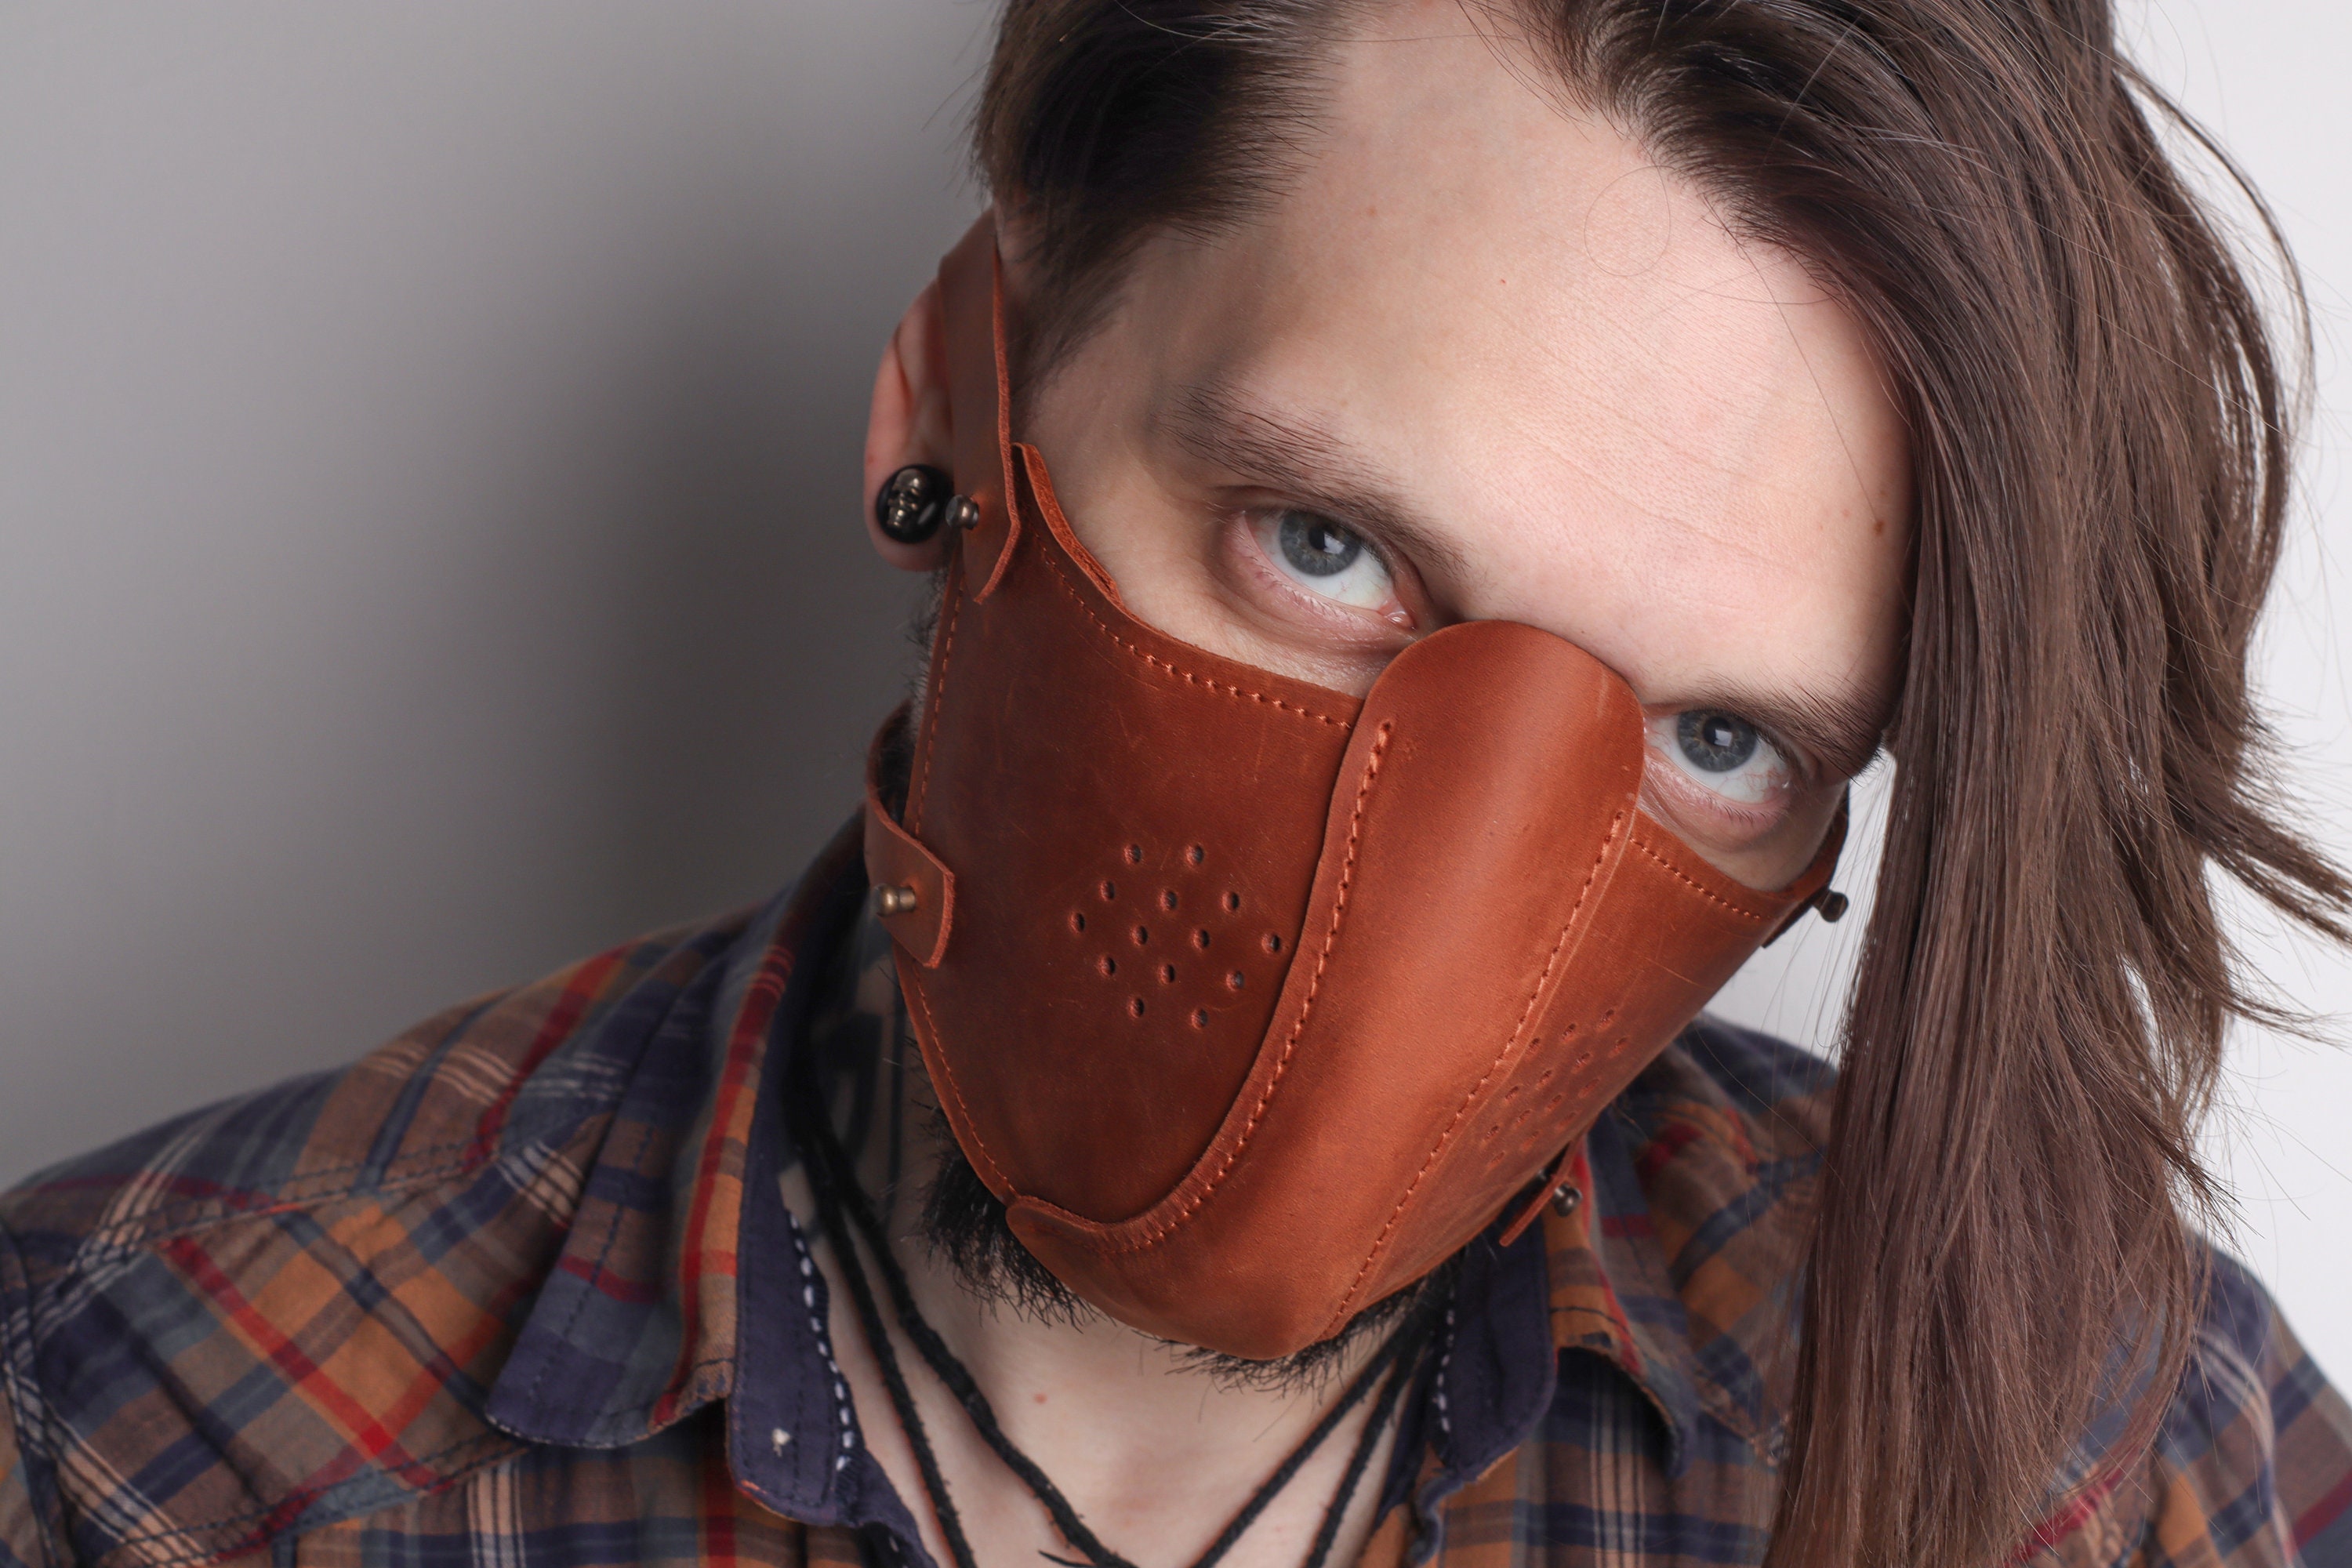 syv bodsøvelser Limited Leather Mask With Filter Pocketleather Face Mask - Etsy